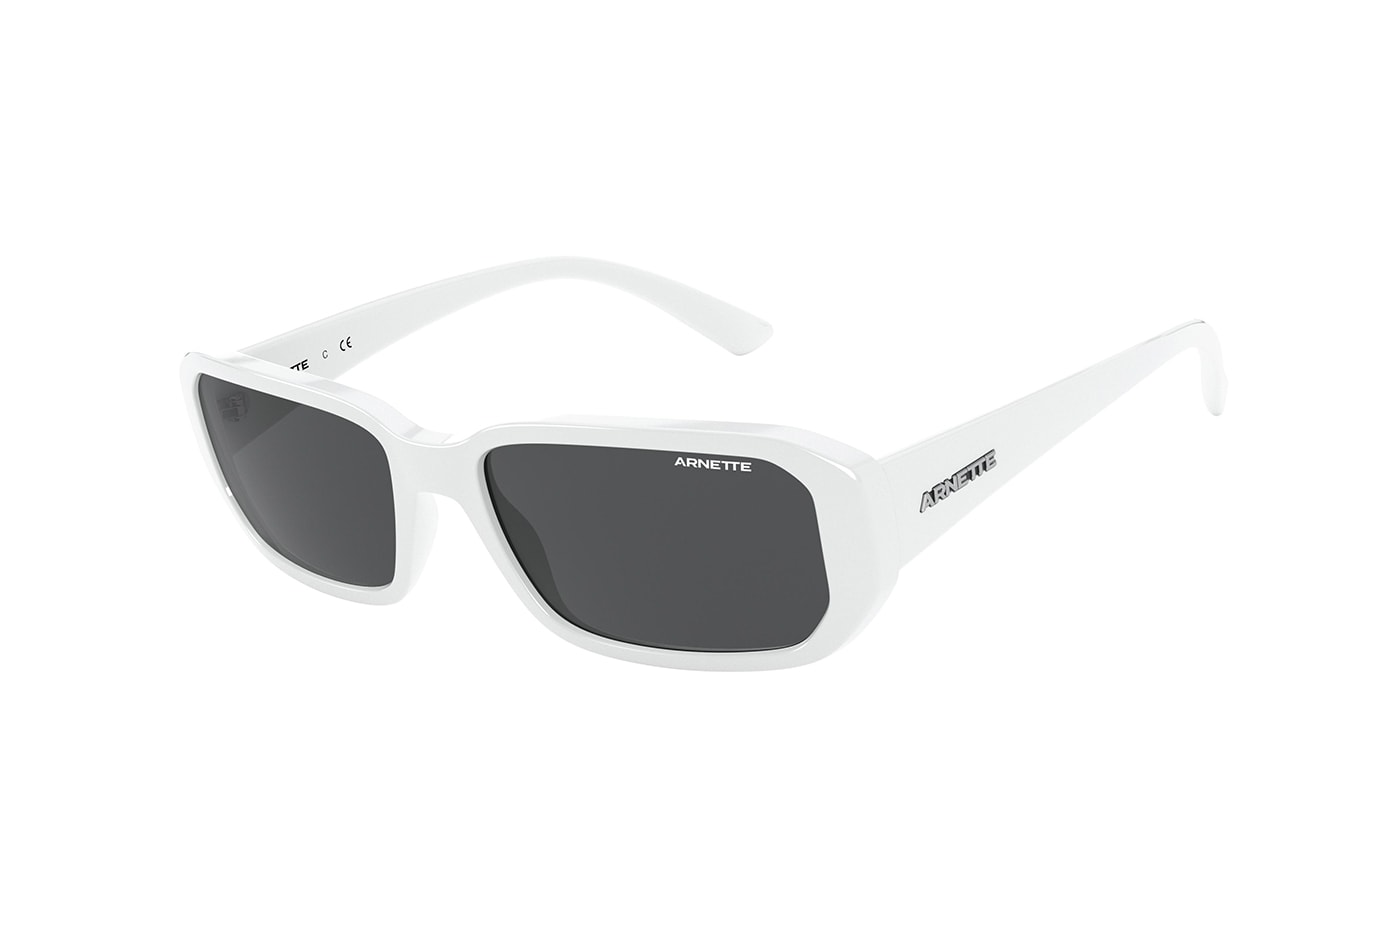 Post Malone Arnette Signature Collection Sunglasses Release AN 4265 Black White Grey Orange